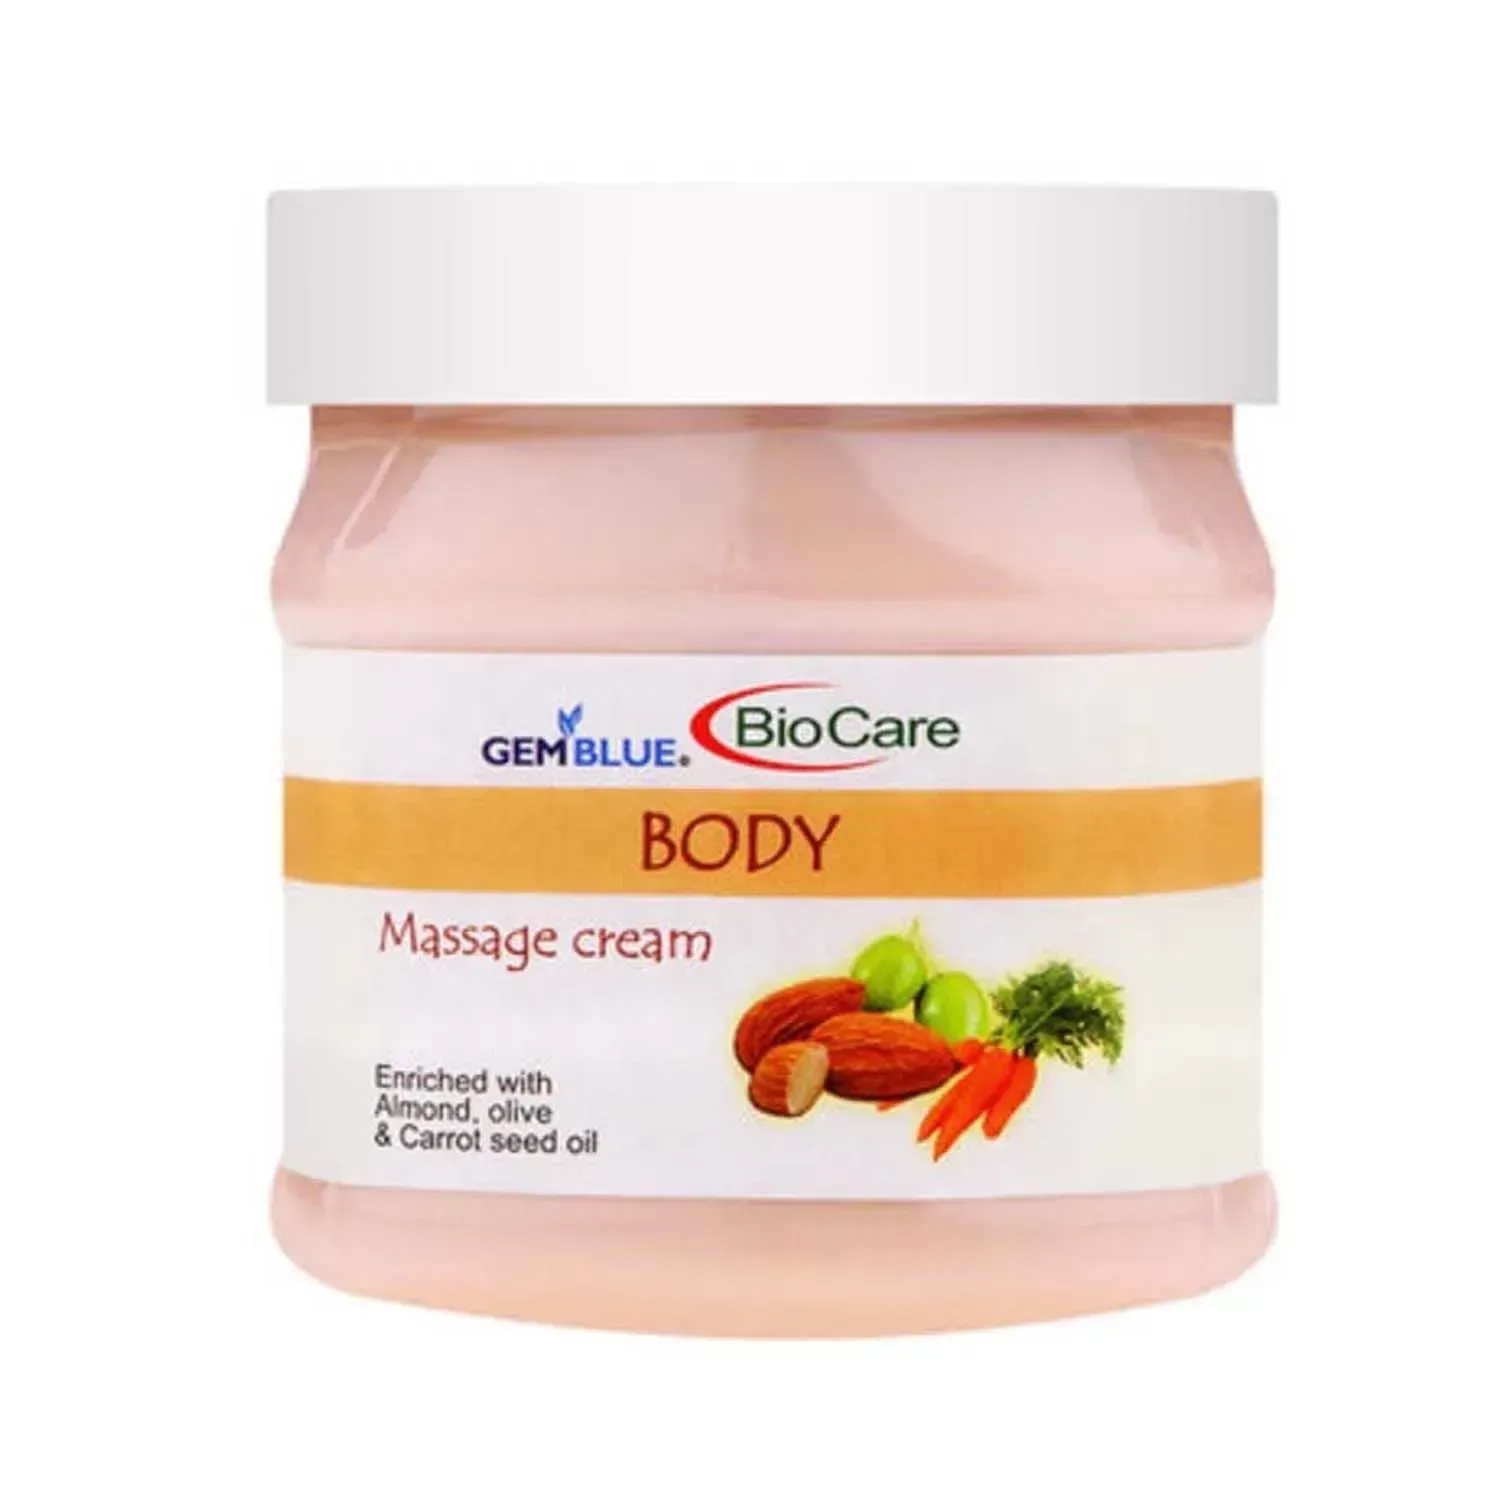 Gemblue Biocare | Gemblue Biocare Body Massage Cream - (500ml)